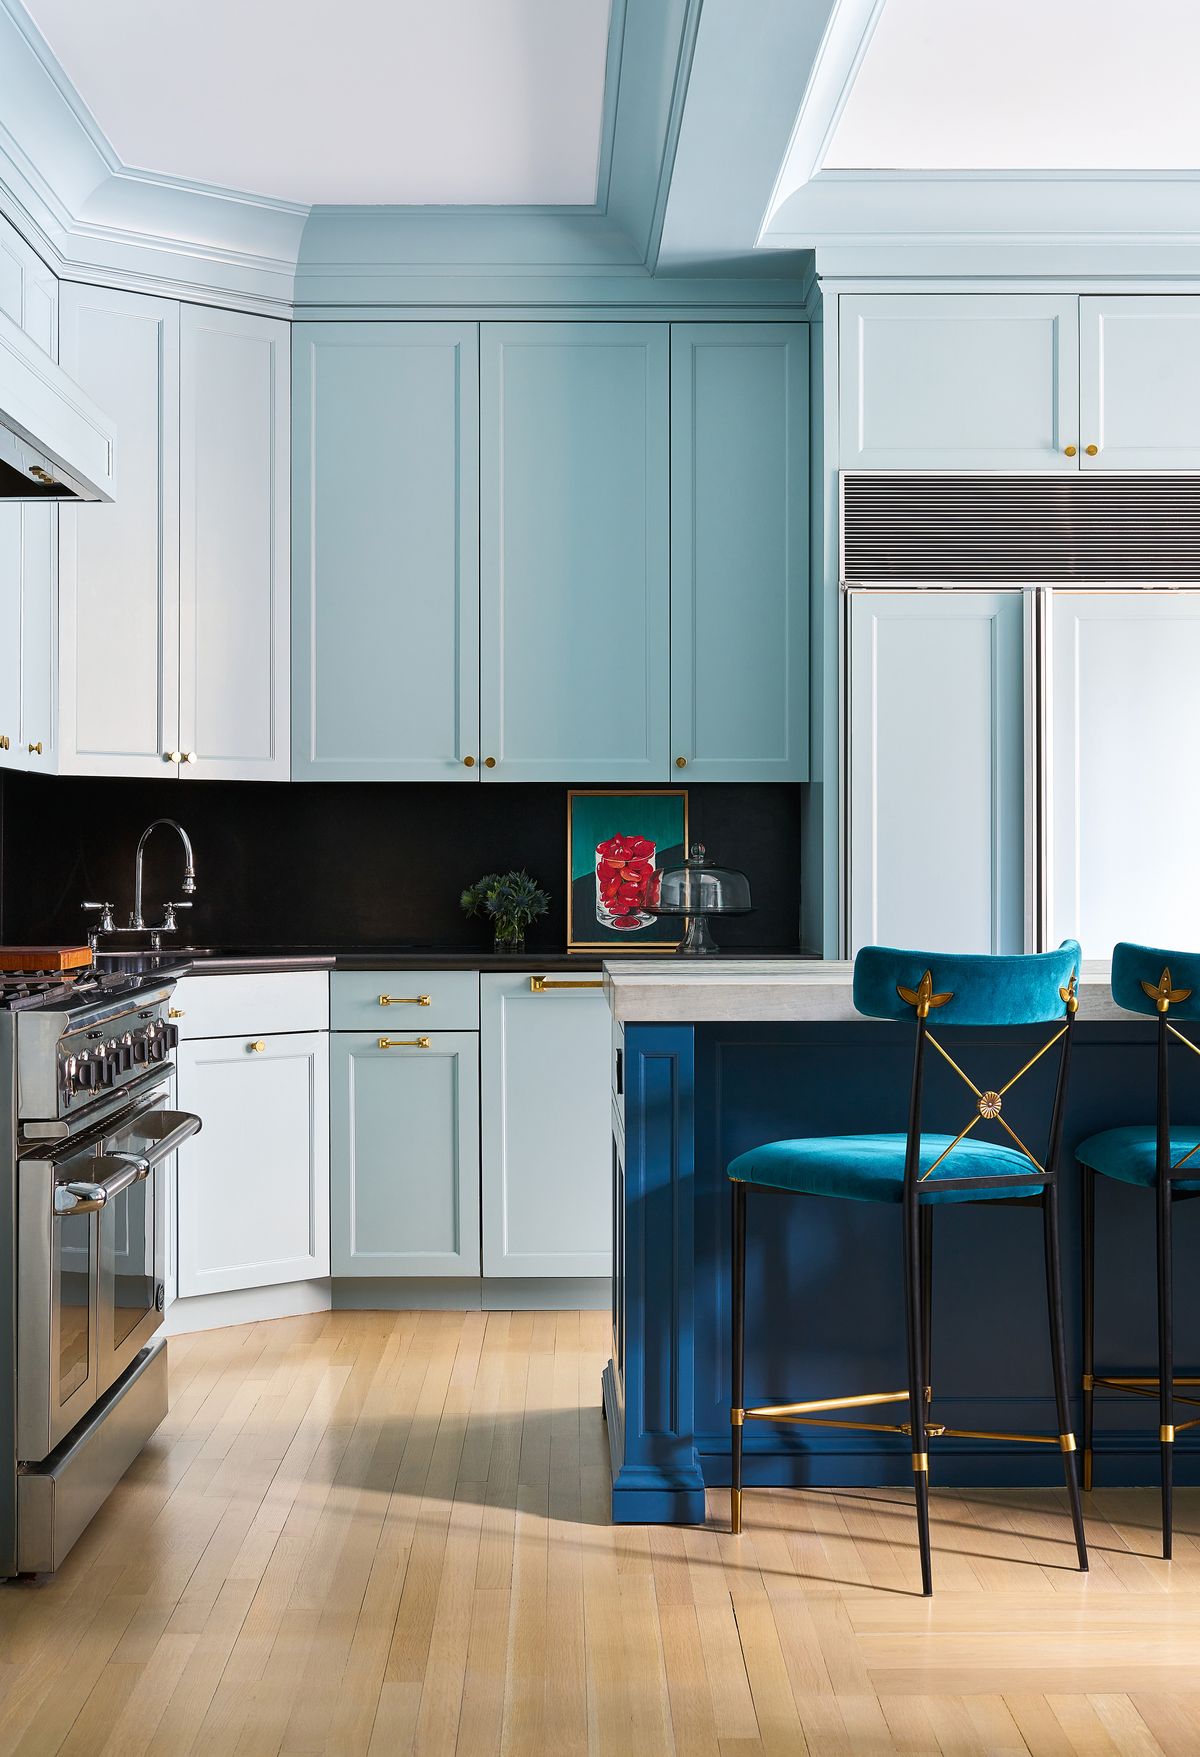 kitchen backsplash ideas in blue kitchen